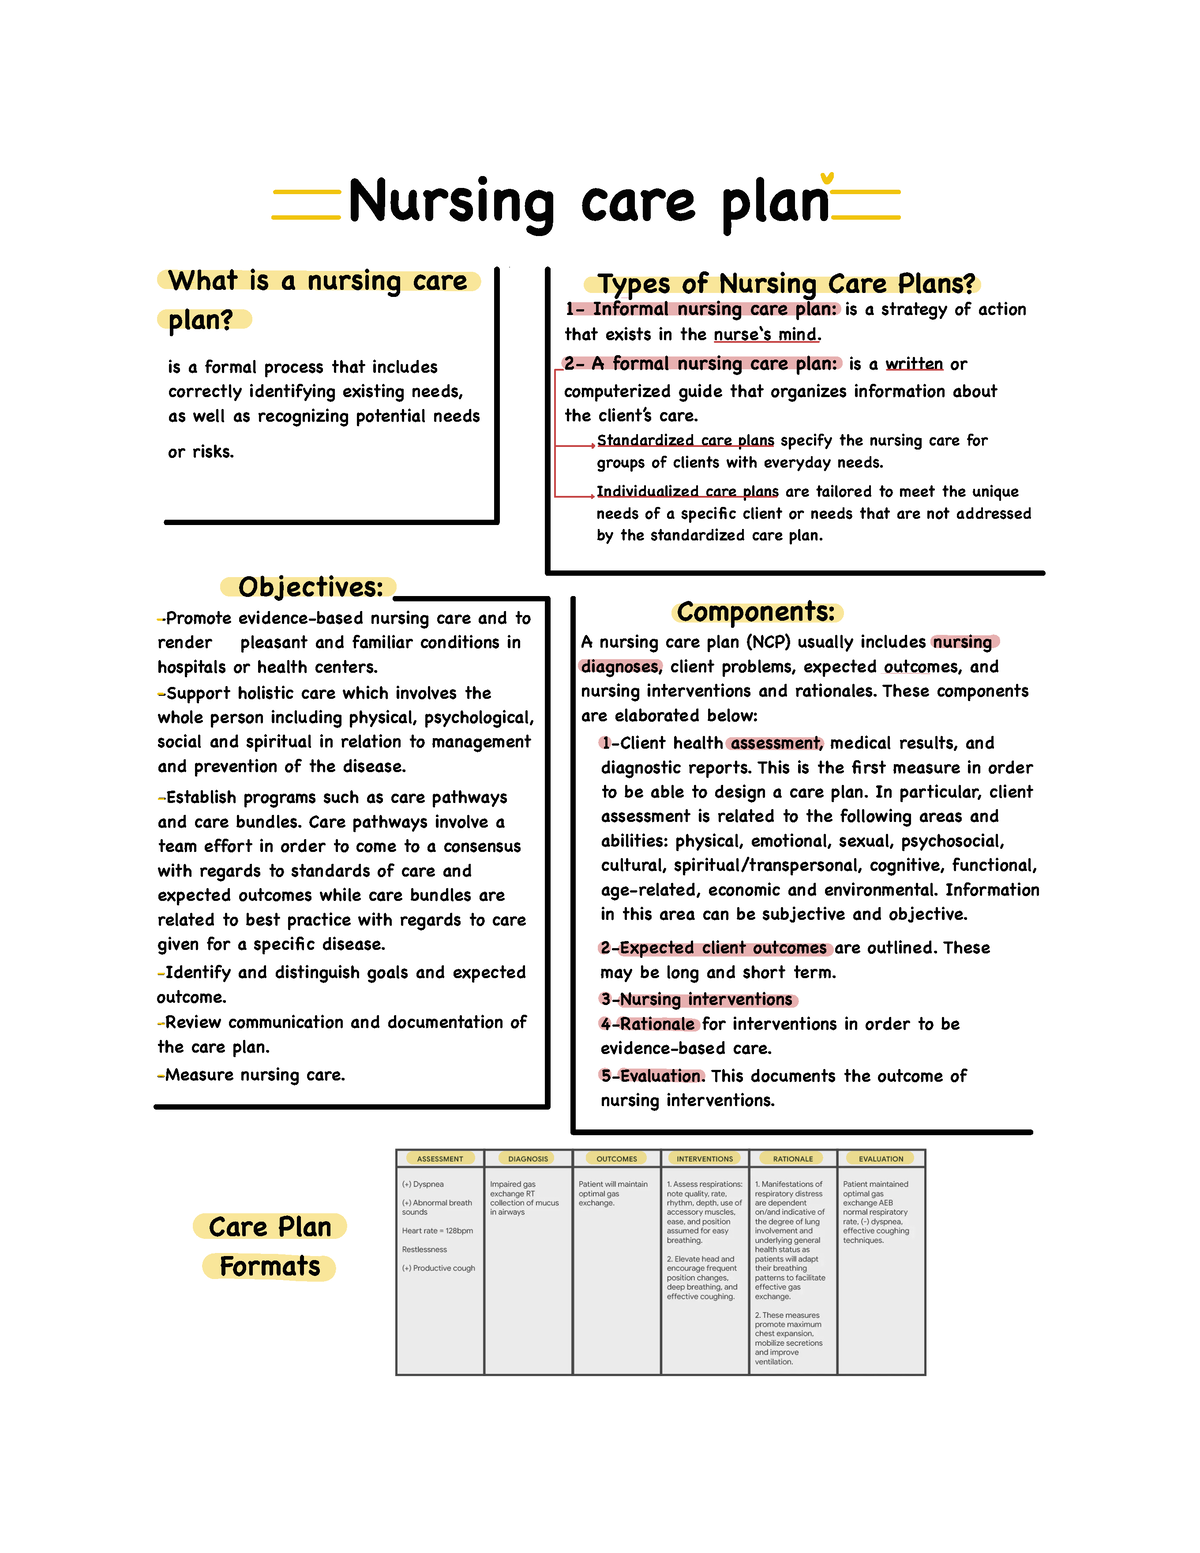 case study in nursing care plan